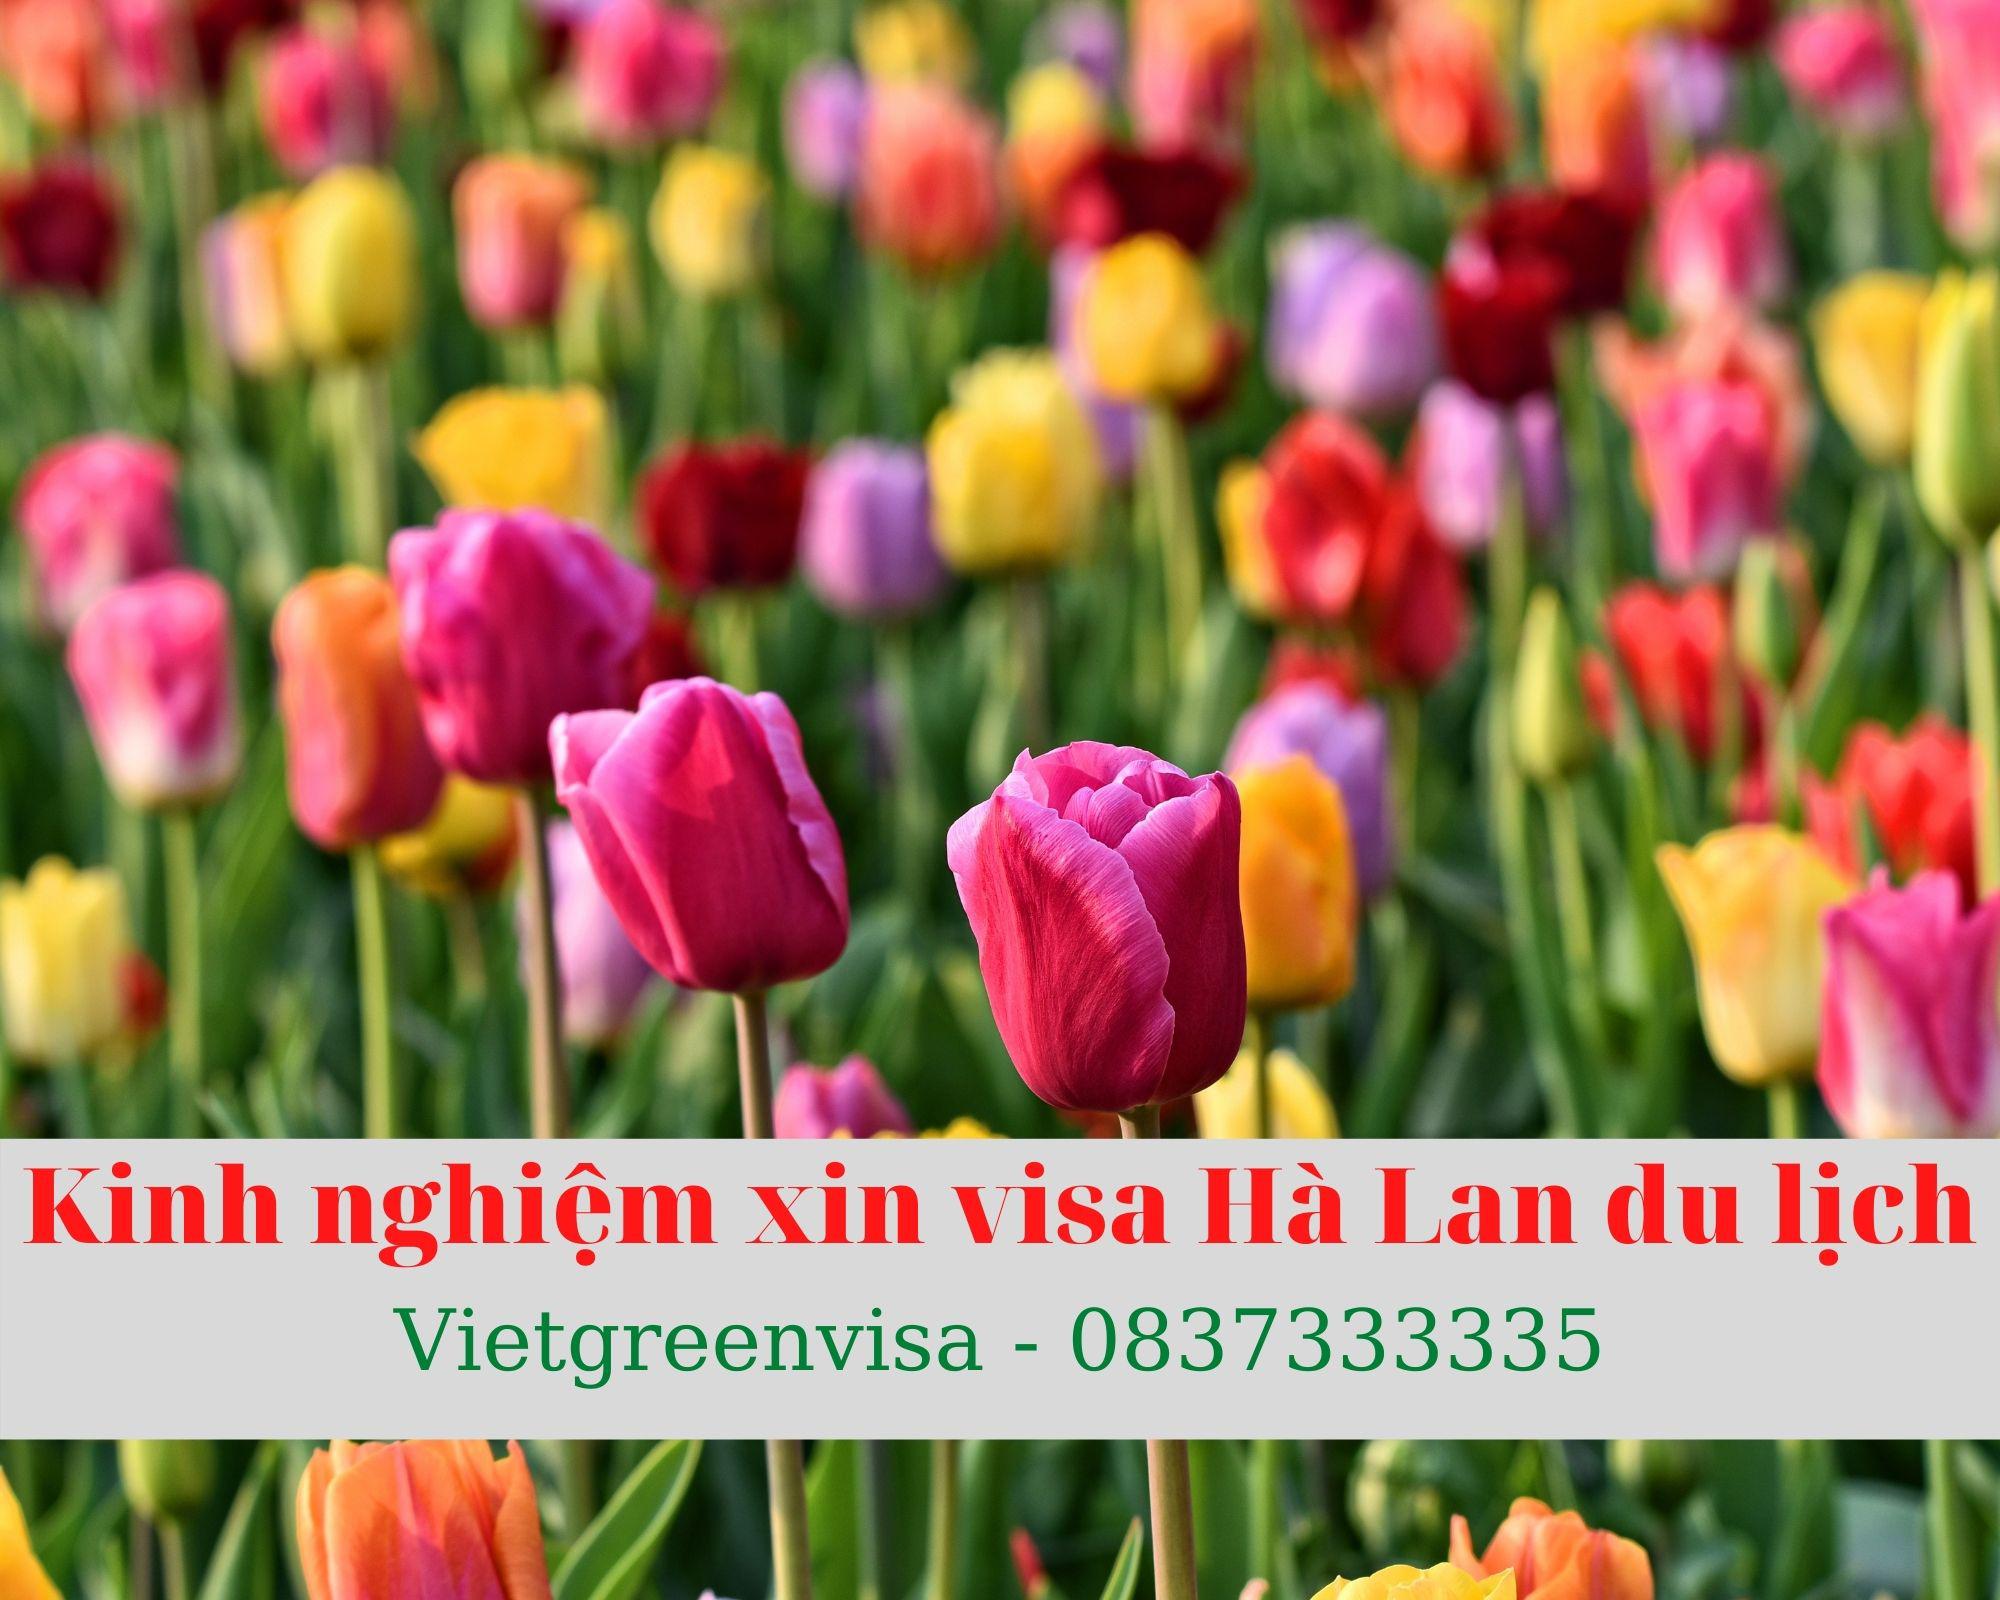 Kinh nghiệm xin visa Hà Lan du lịch tự túc và thành công